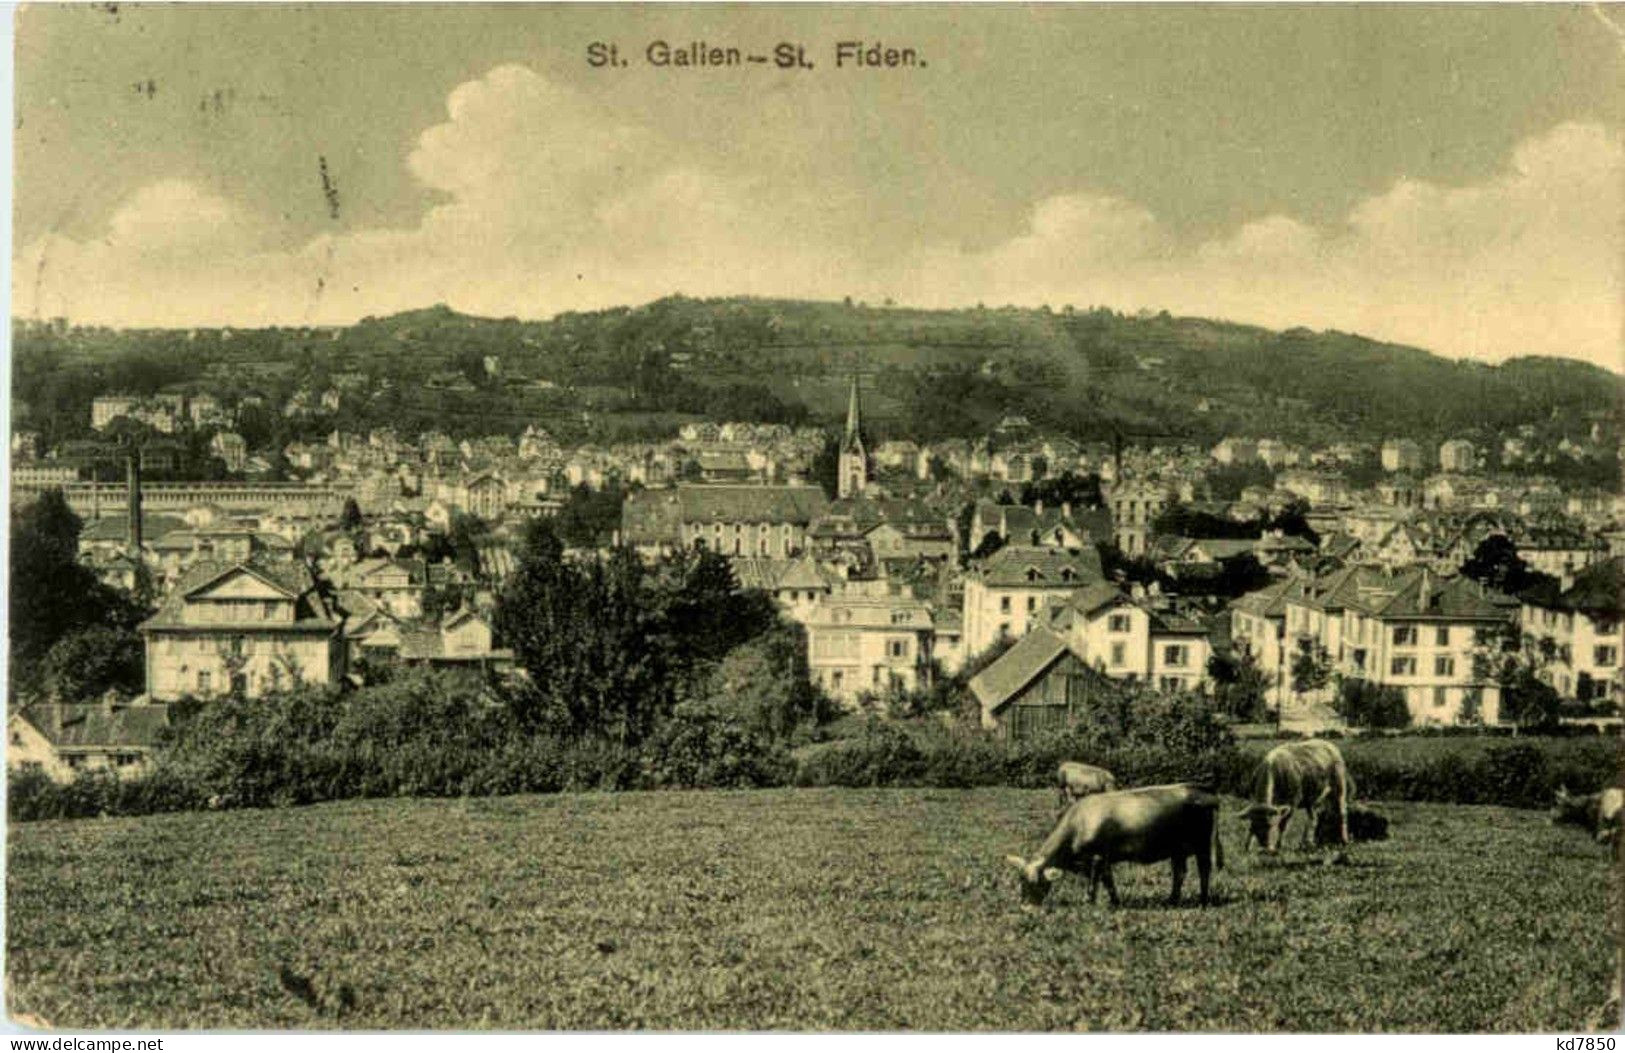 St. Gallen - St. Fiden - San Galo